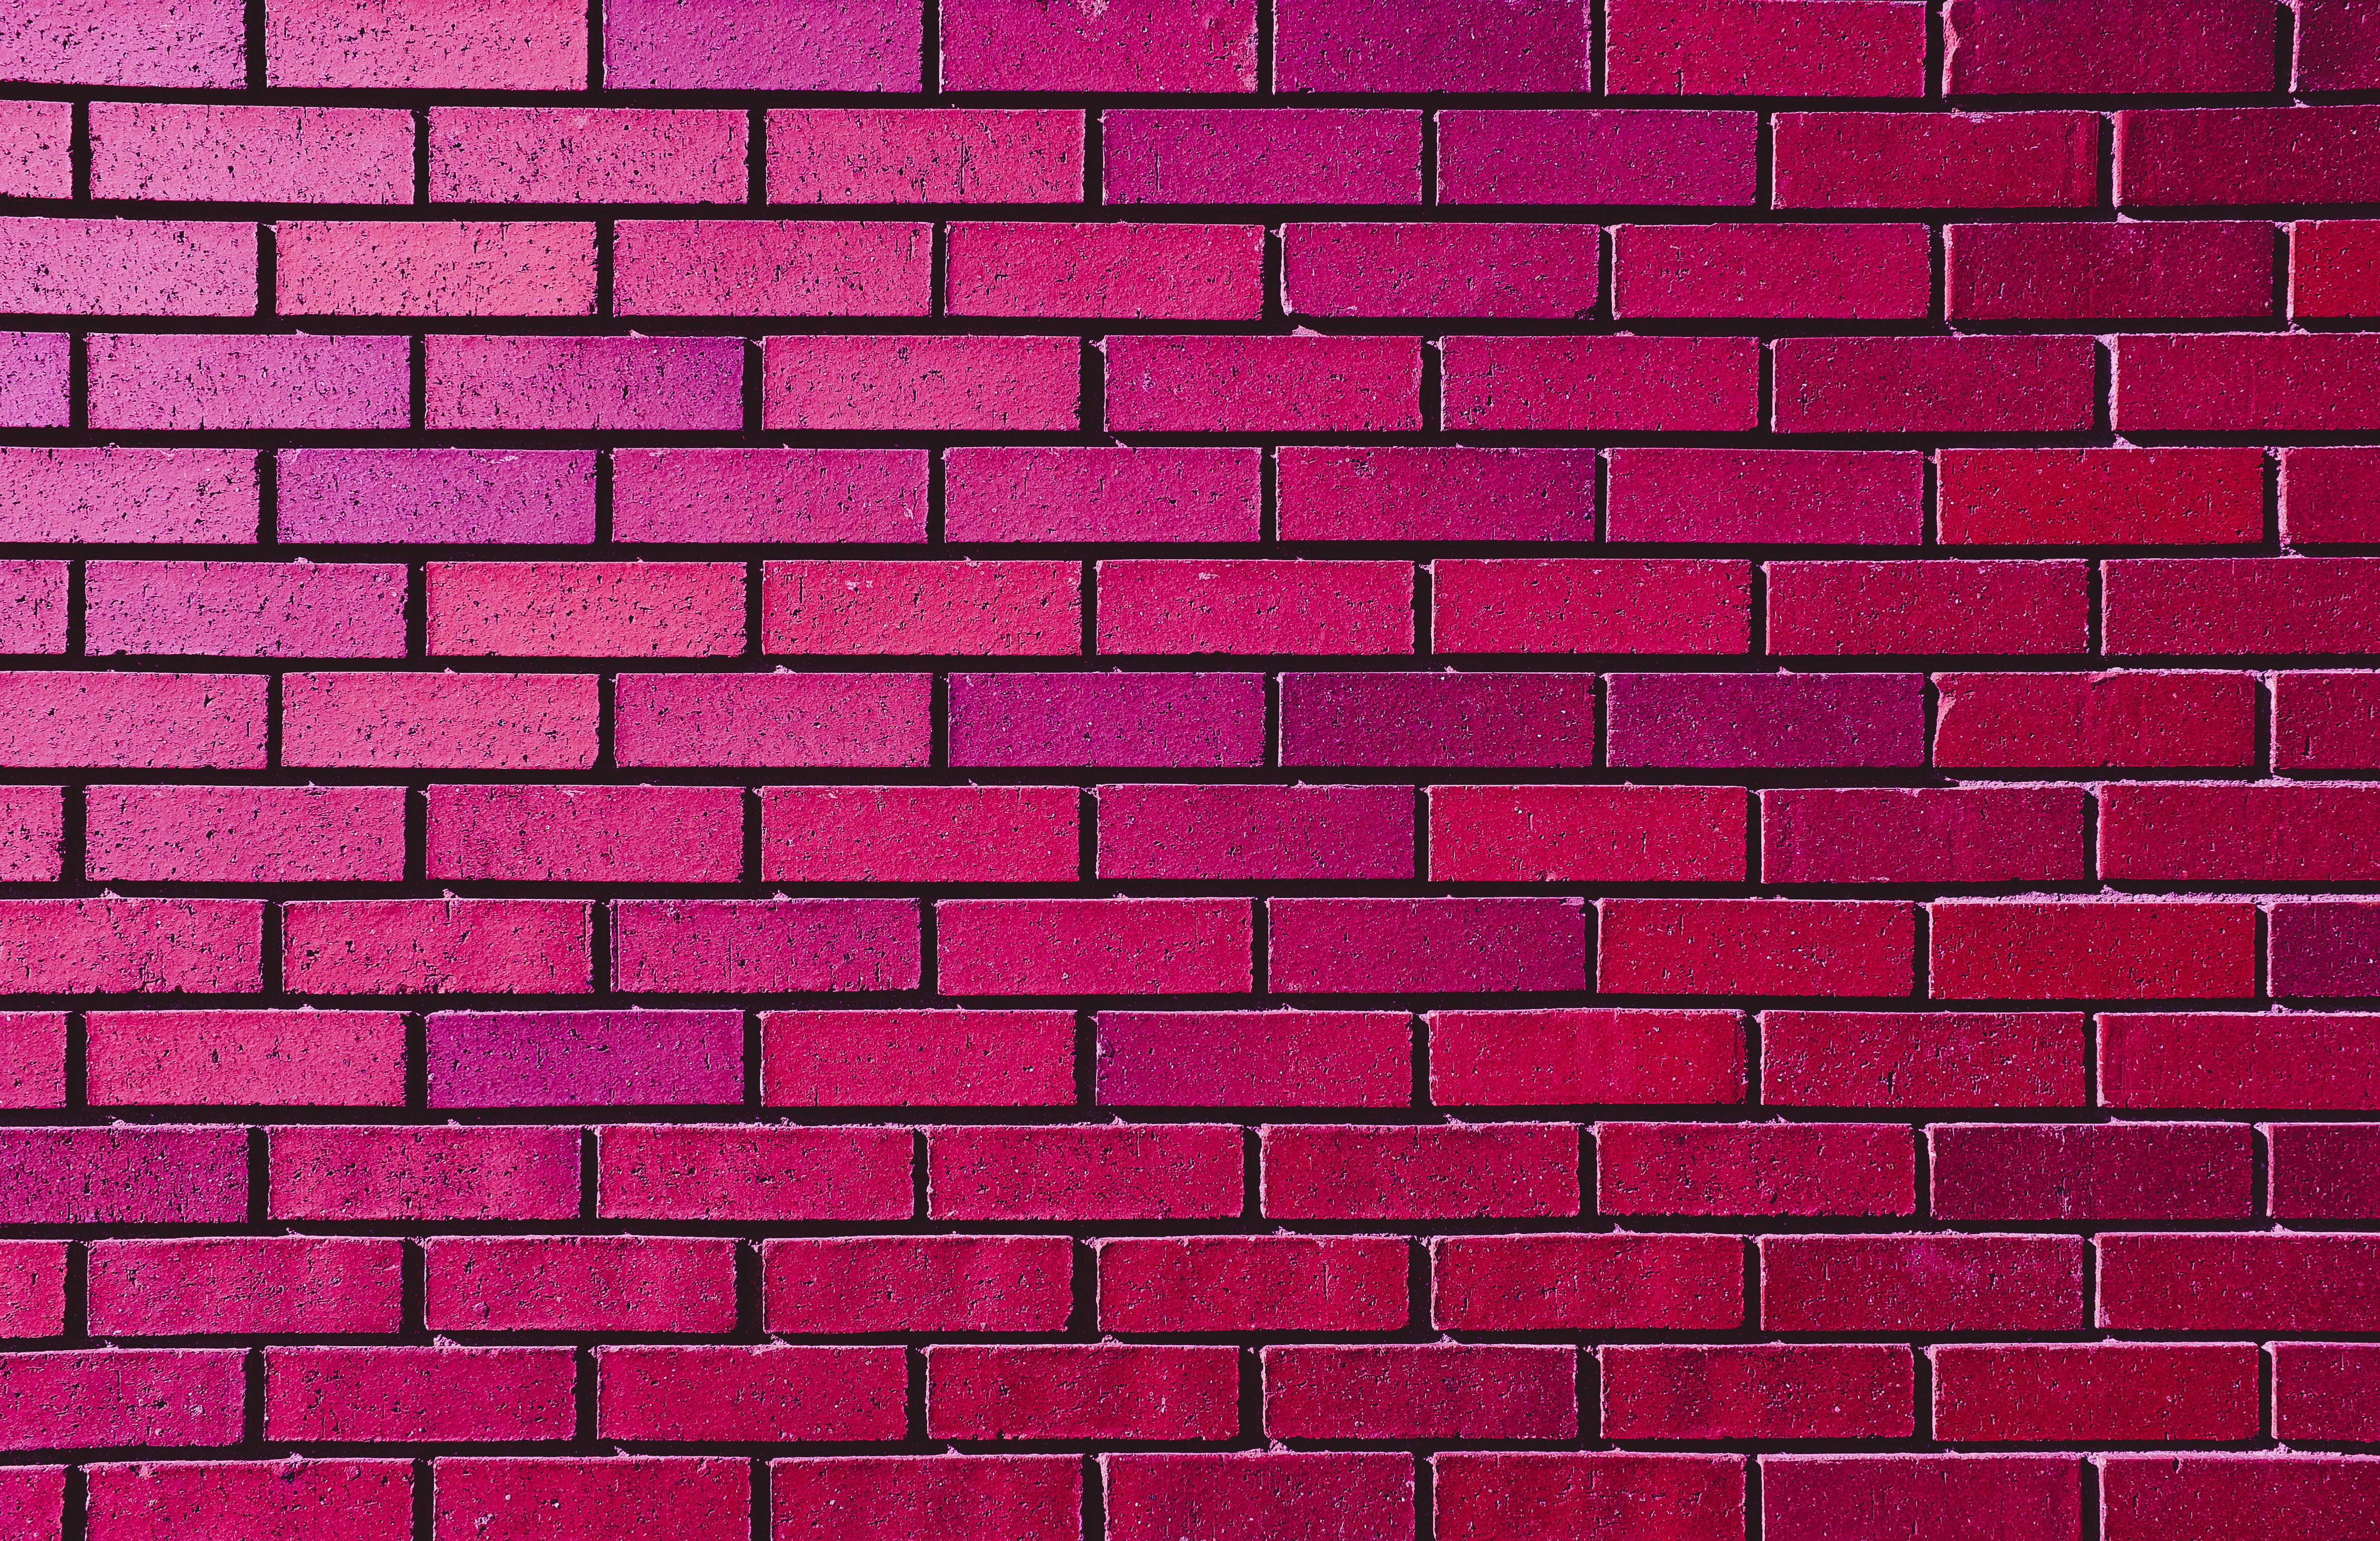 31 Brick Phone Wallpapers  WallpaperSafari